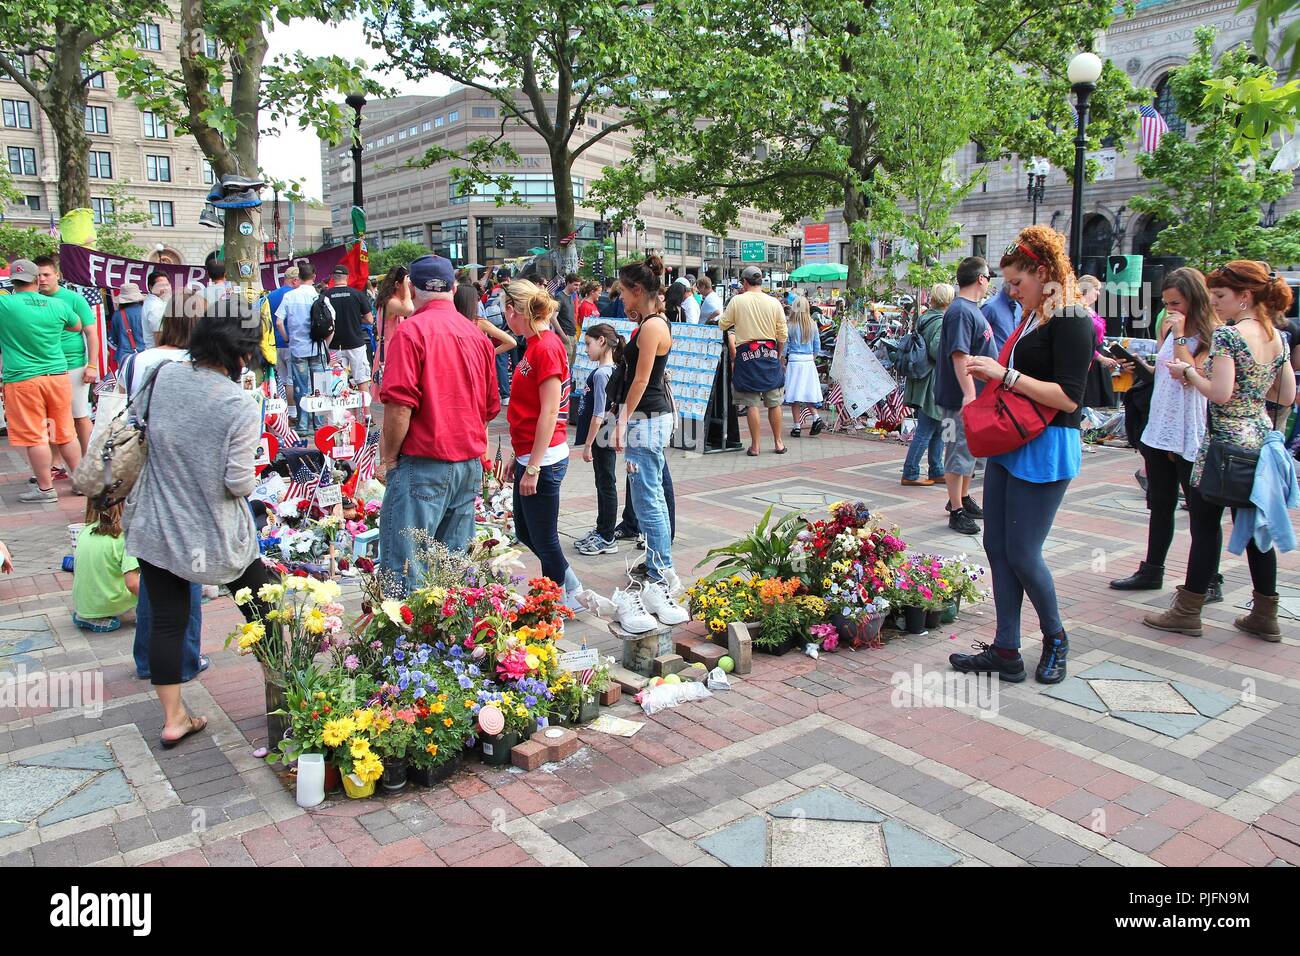 BOSTON, USA - 8 juin 2013 : Les gens de commémorer les victimes des bombardements dans la région de Boston. Attaque terroriste a eu lieu au cours de célèbre Marathon de Boston le 15 avril 2013. Banque D'Images